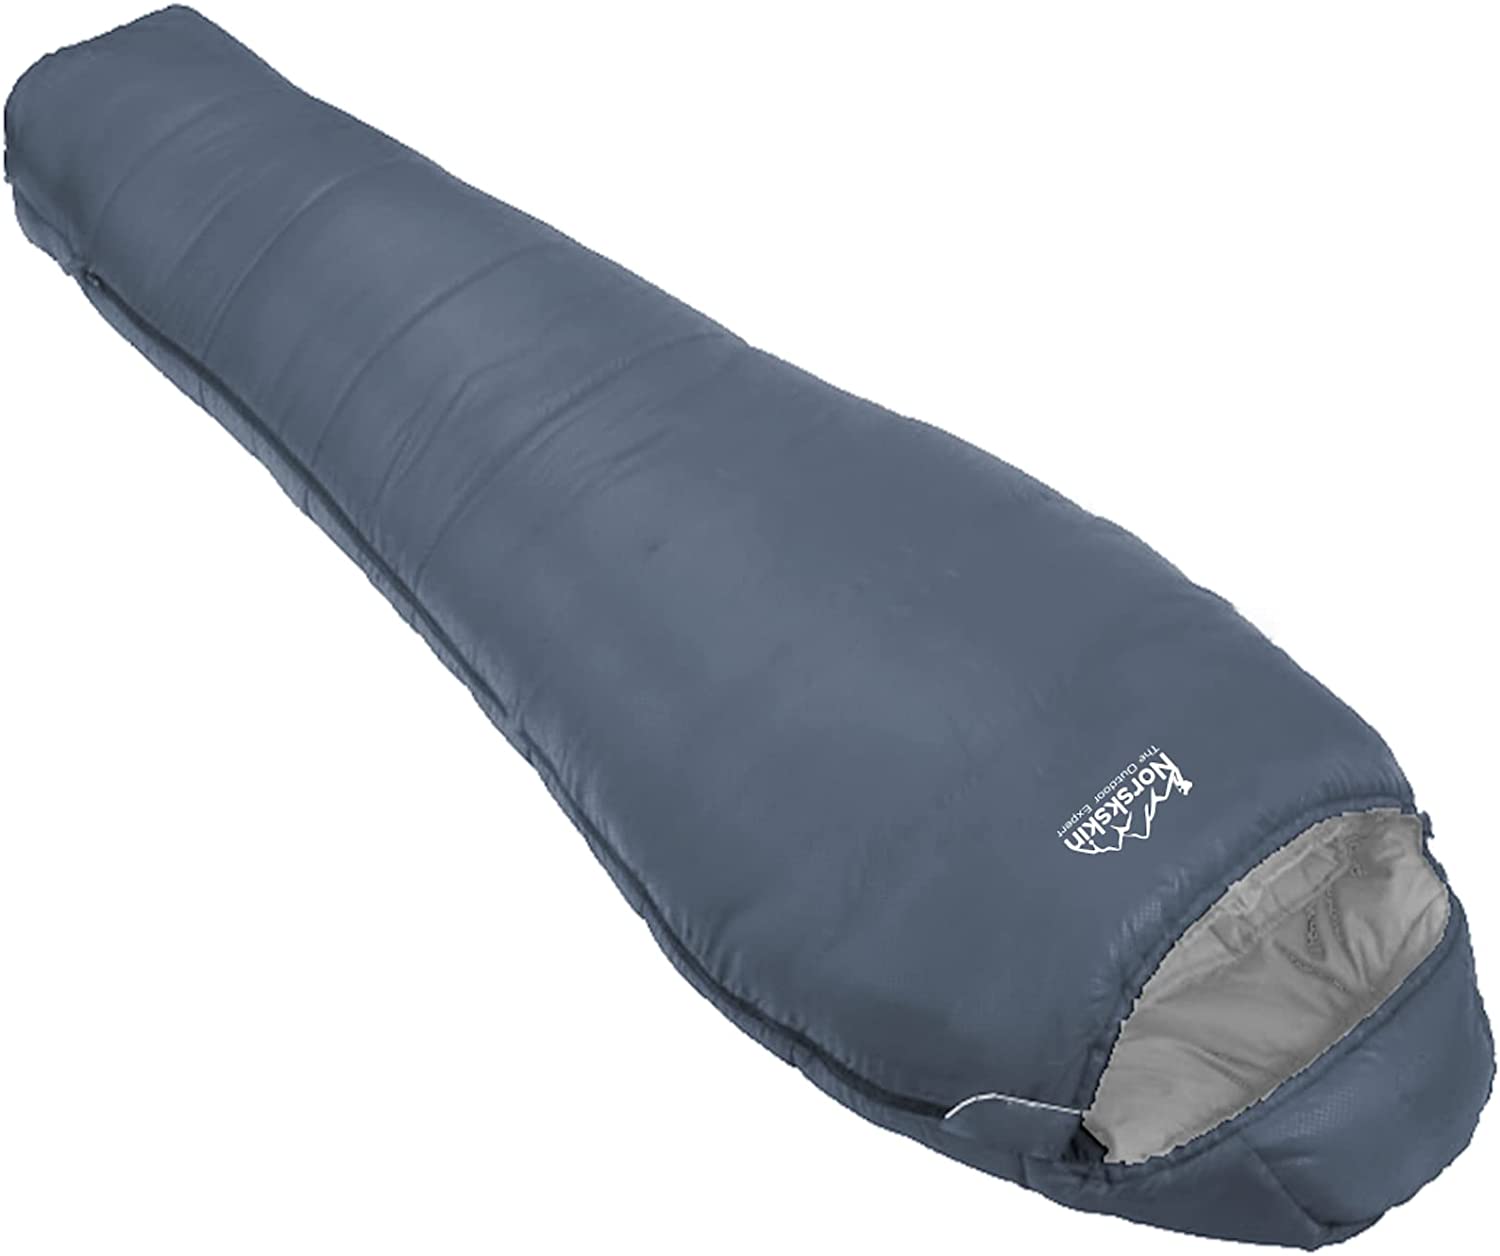 2x Schlafsack Mumienschlafsack Camping Outdoor 250g 210x70 cm anthrazit blau 